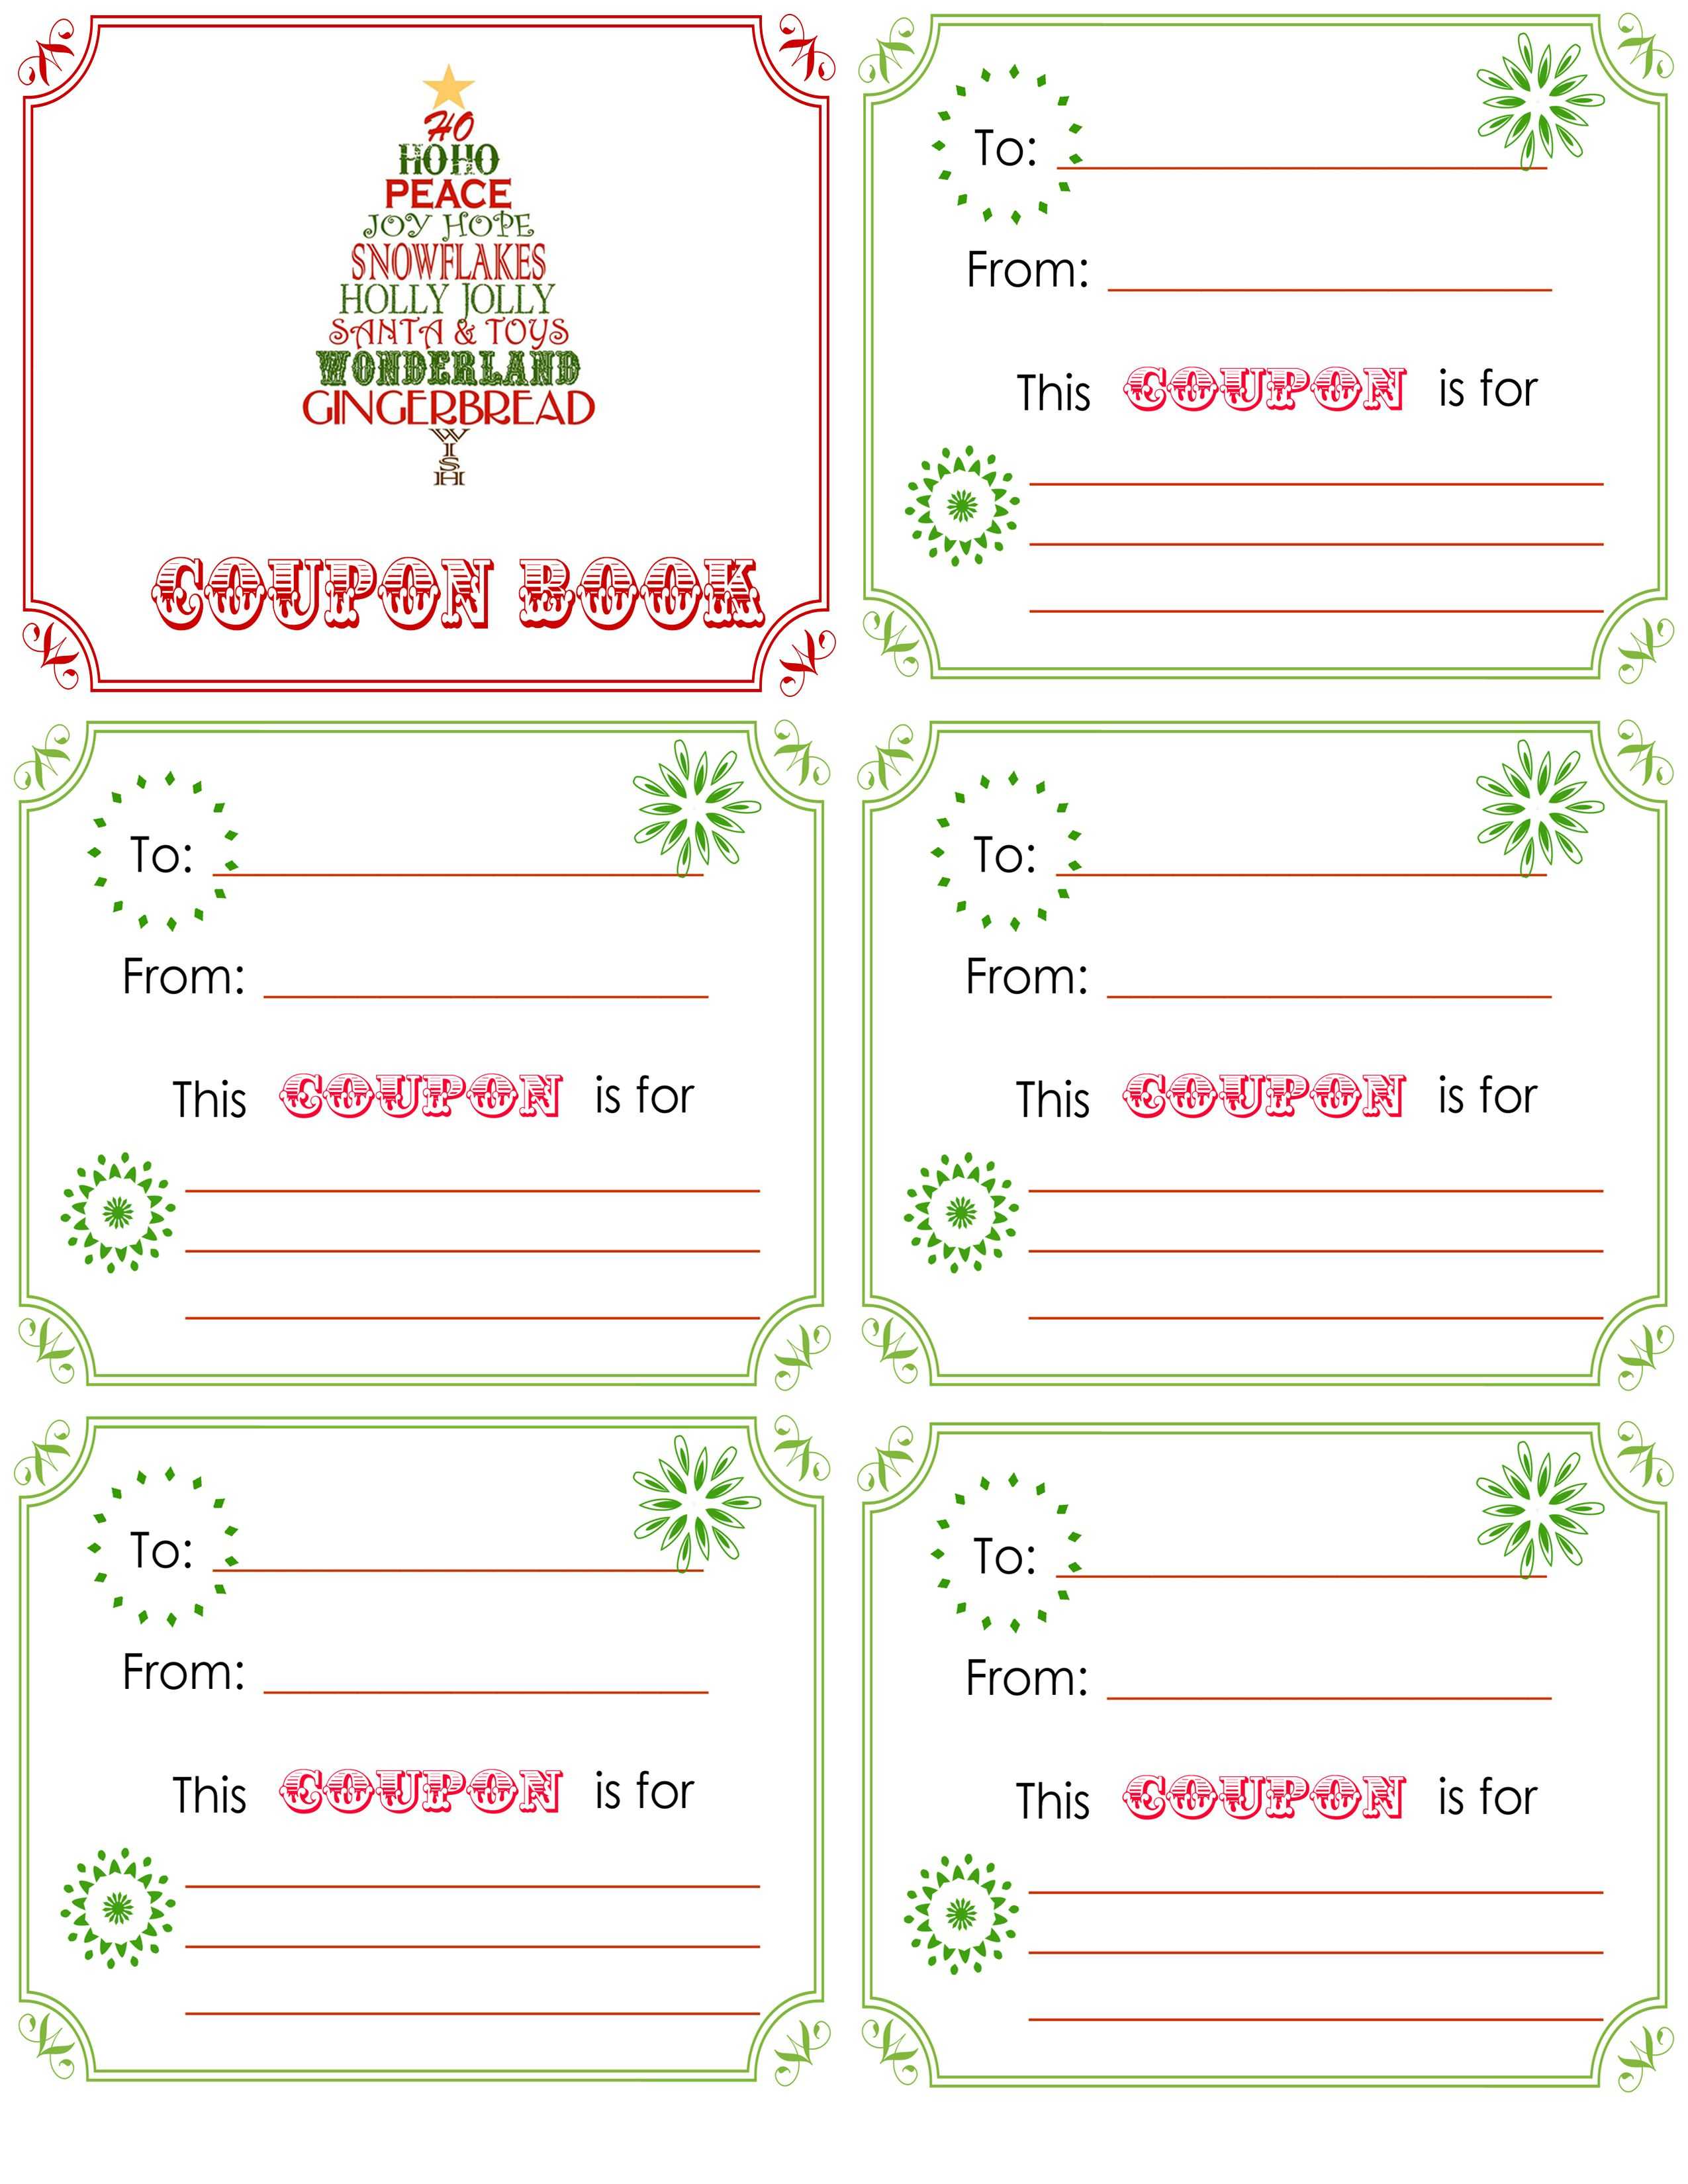 Printable+Christmas+Coupon+Book+Template | Christmas Within Homemade Christmas Gift Certificates Templates